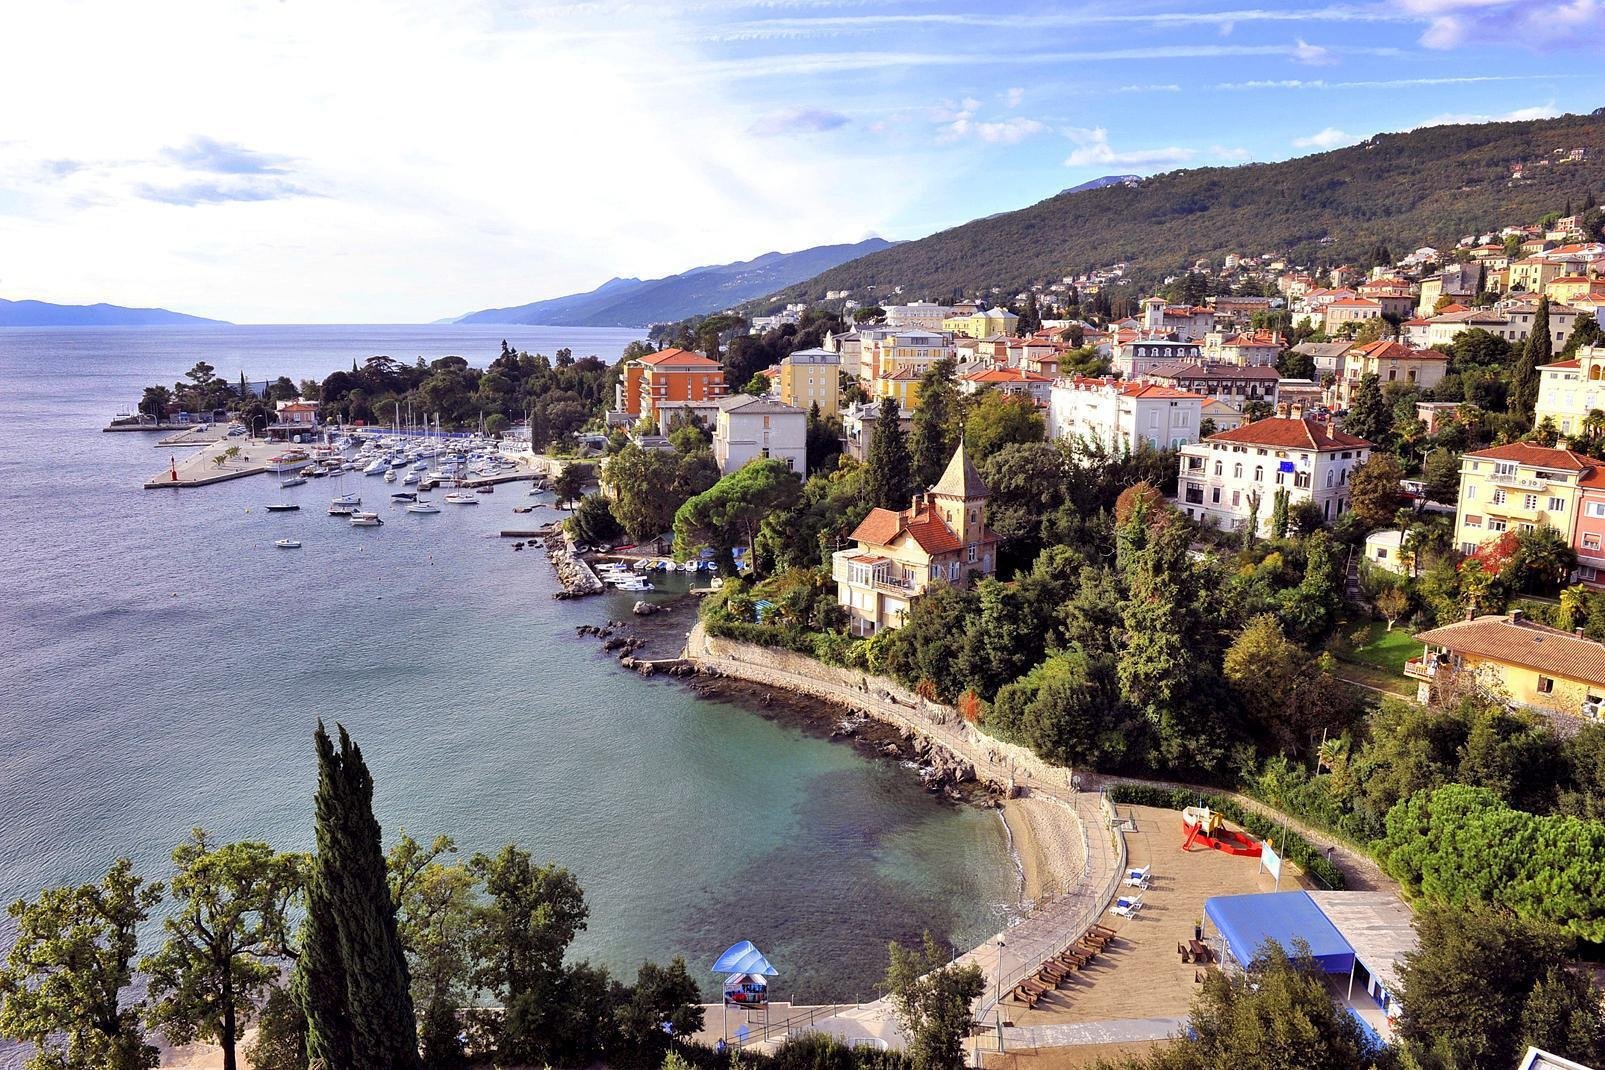 "La bahía de Kvarner está situada entre las dos penínsulas de Istria y Dalmacia, al norte de Croacia. Engloba la Riviera de Opatija en la costa este de Istria, la costa a los pies del macizo de Velebit, las montañas de Gorski Kotar y las islas del golfo de Kvarner.

 Las primeras construcciones costeras y termales se crearon en la Riviera en el siglo XIX para la nobleza austriaca del Danubio, que sabía ...